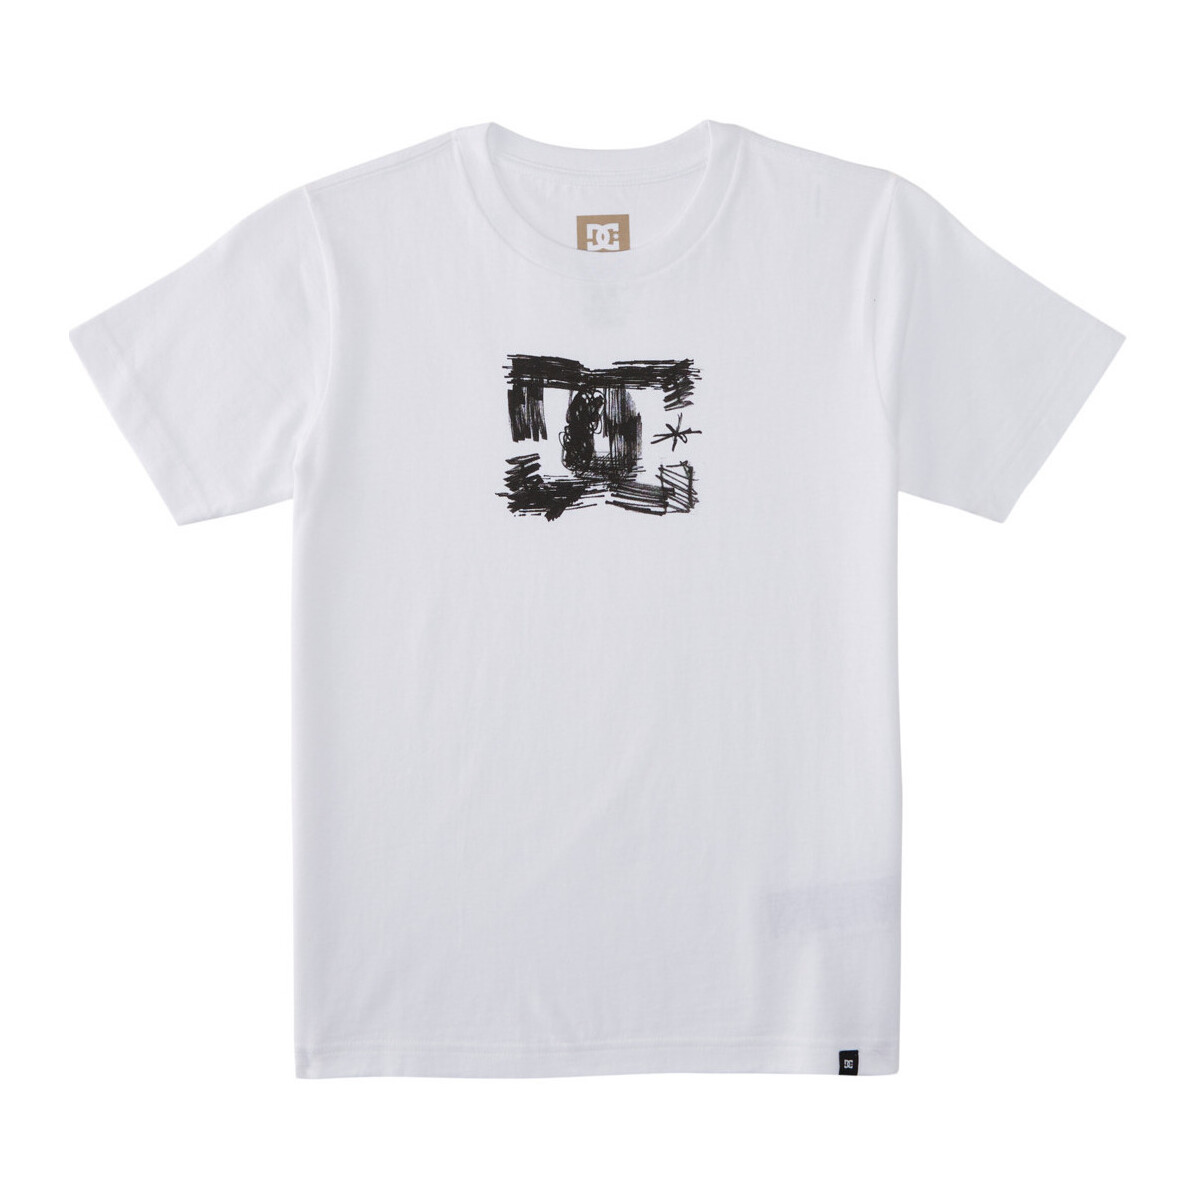 Vêtements Garçon T-shirts manches courtes DC Shoes Sketchy Blanc